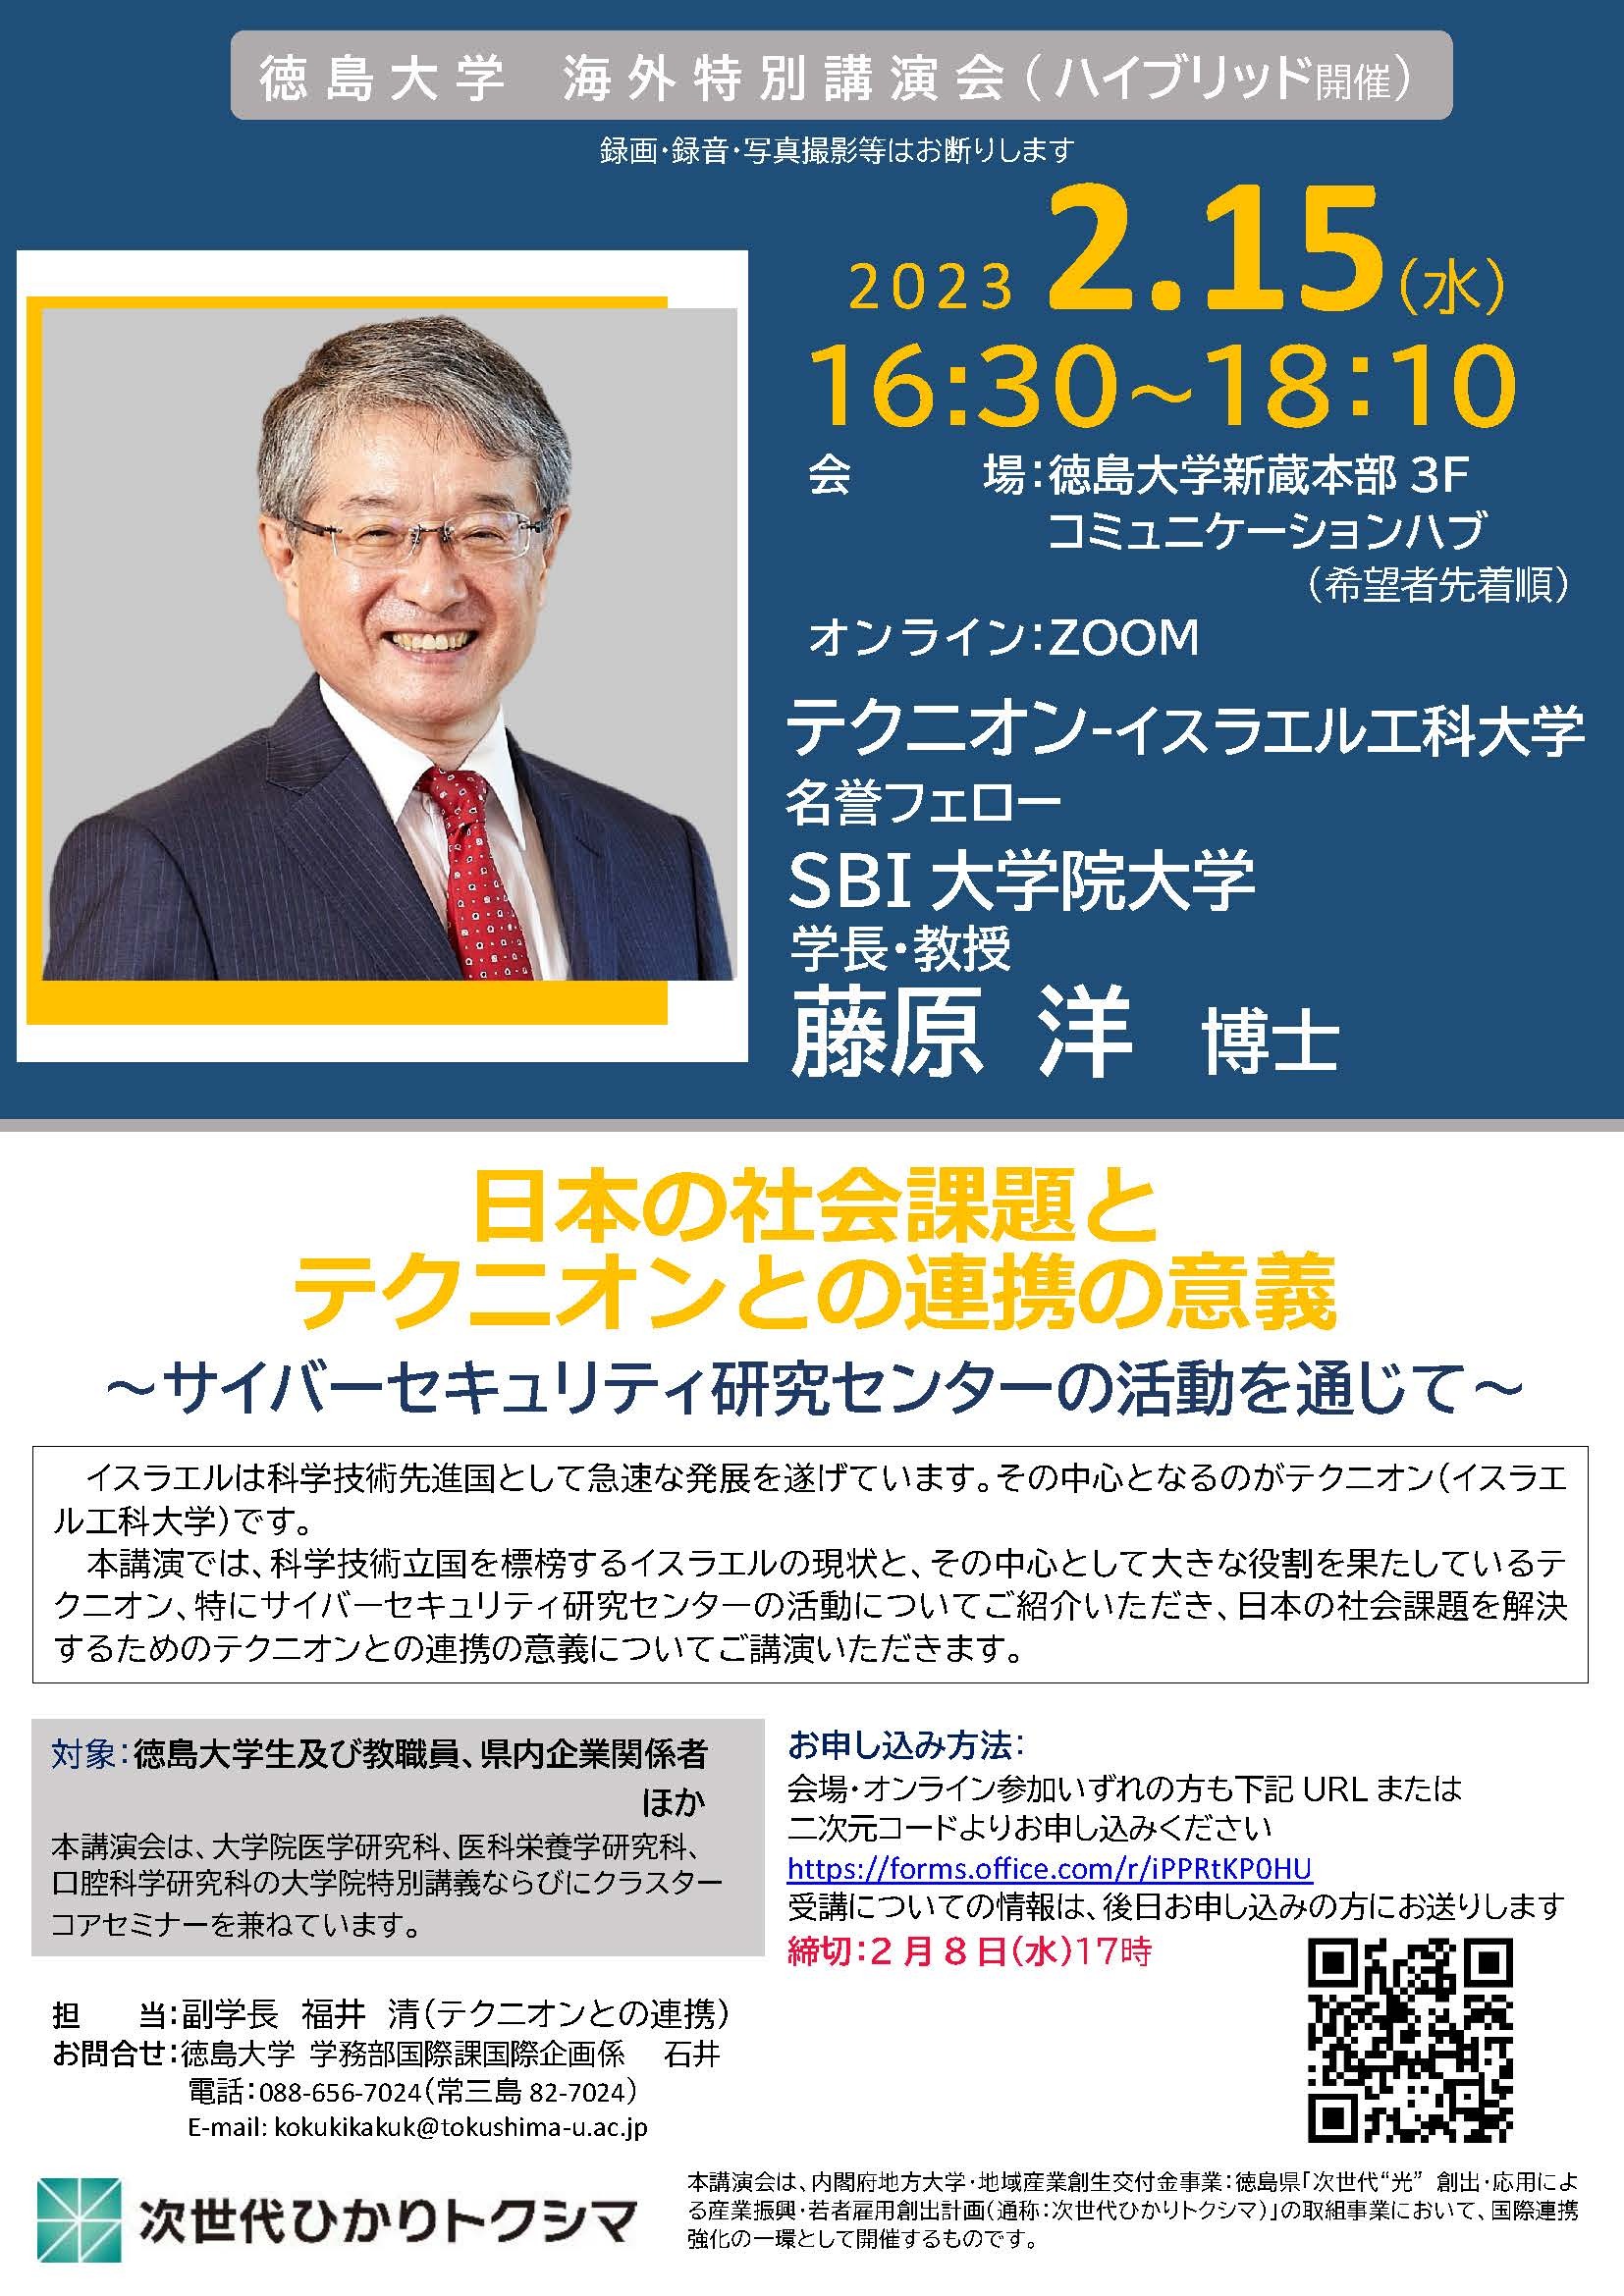 海外特別講演会「日本の社会課題とテクニオンとの連携の意義 ～サイバーセキュリティ研究センターの活動を通じて～」